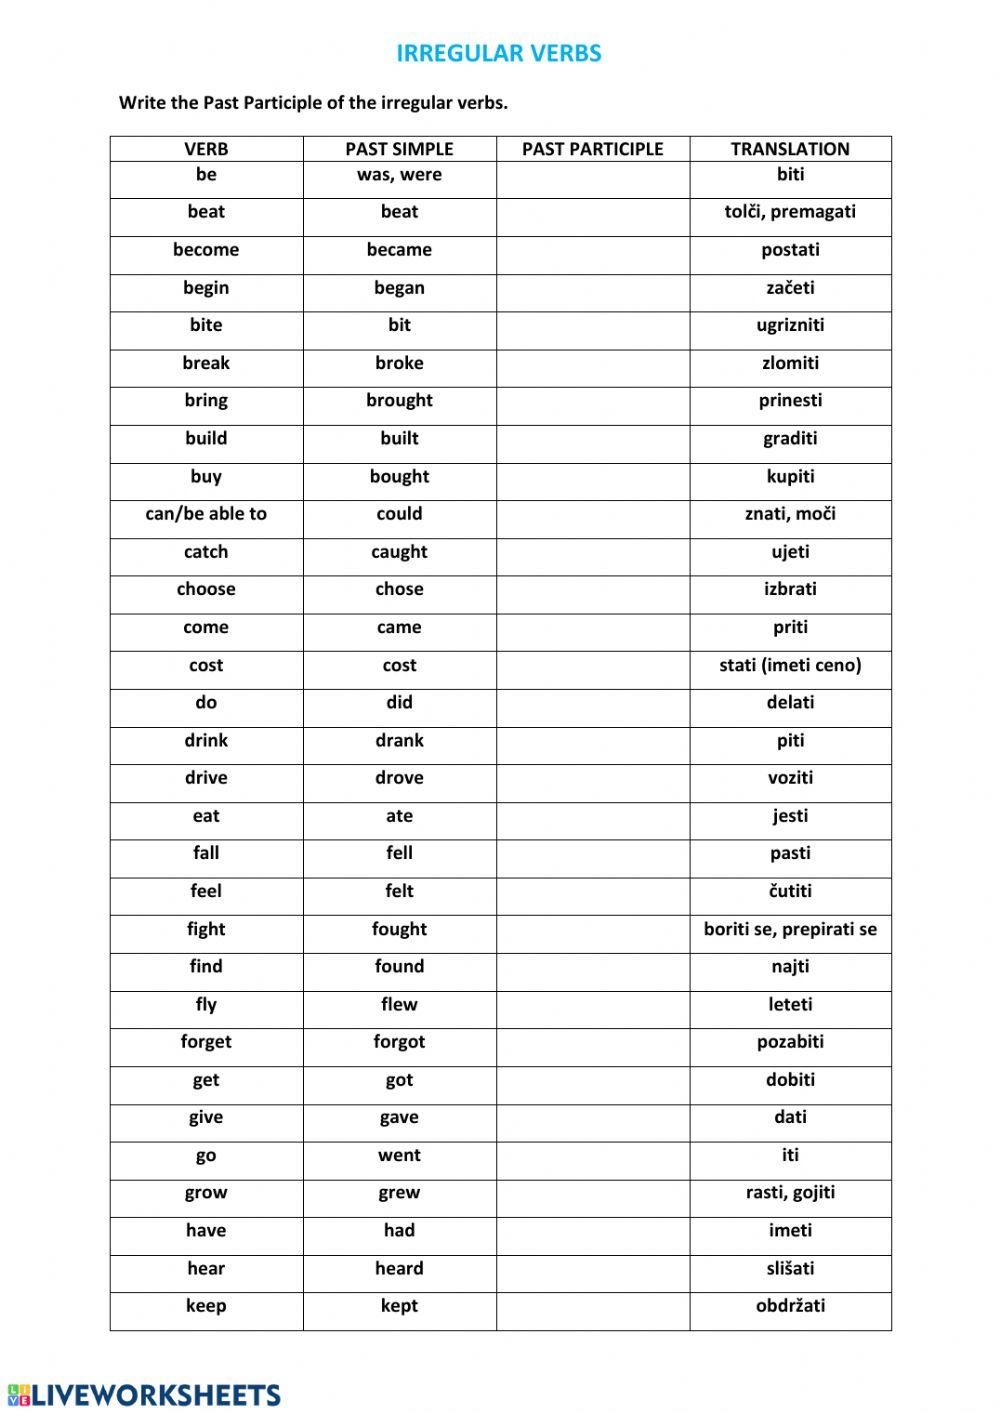 3rd form - irregular verbs worksheet | Live Worksheets